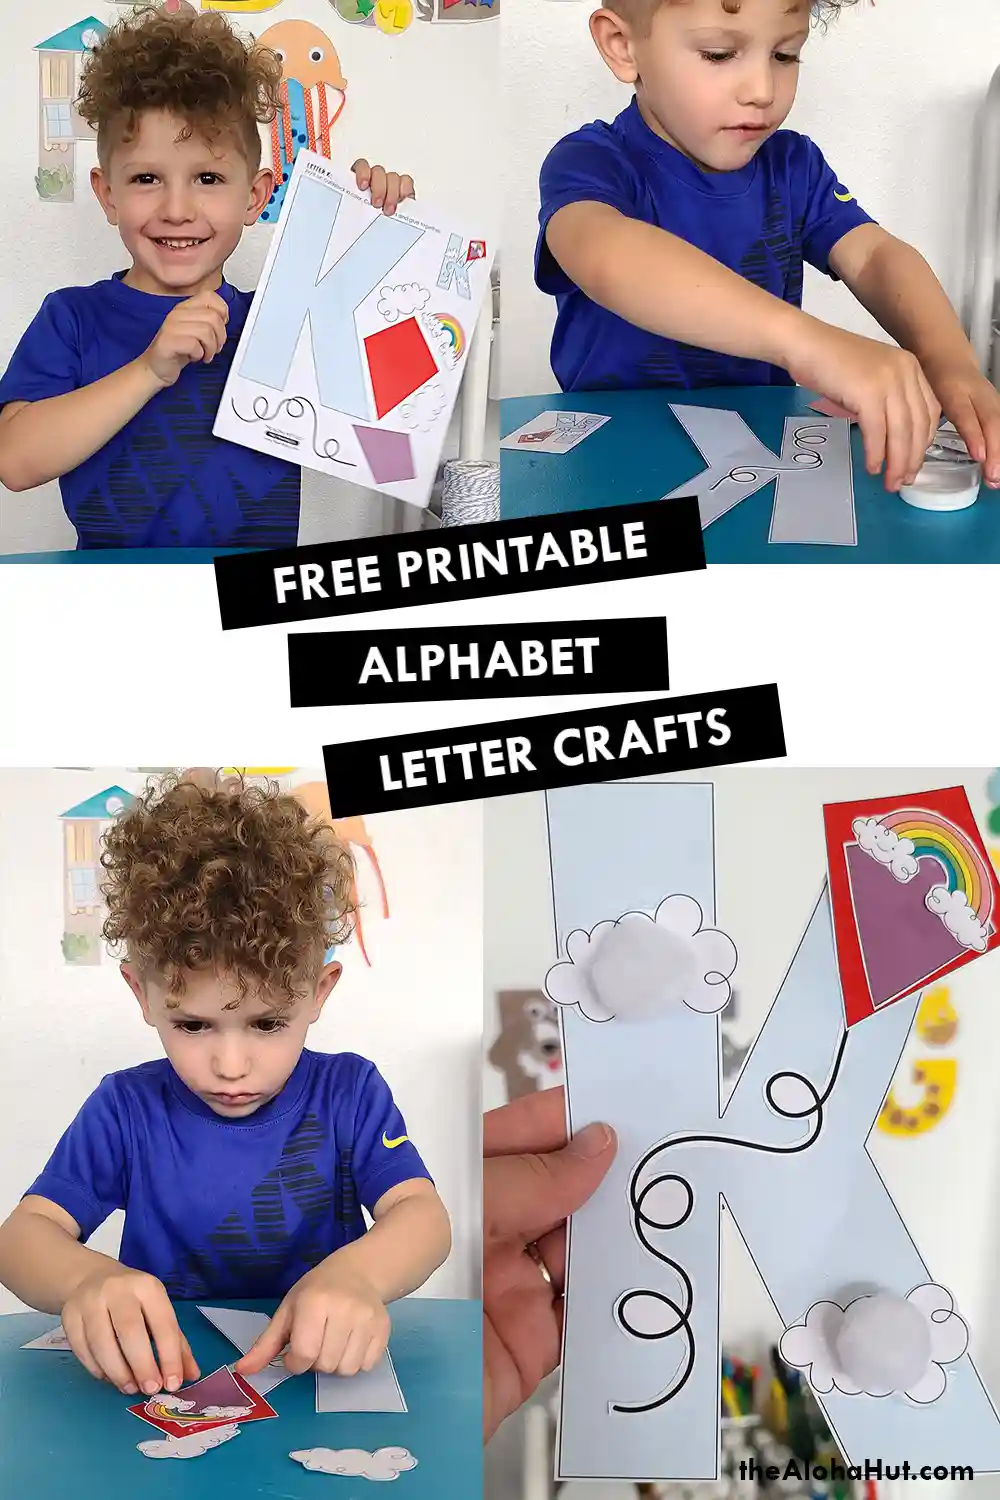 Alphabet Letter Crafts - Letter K L M N - free printable